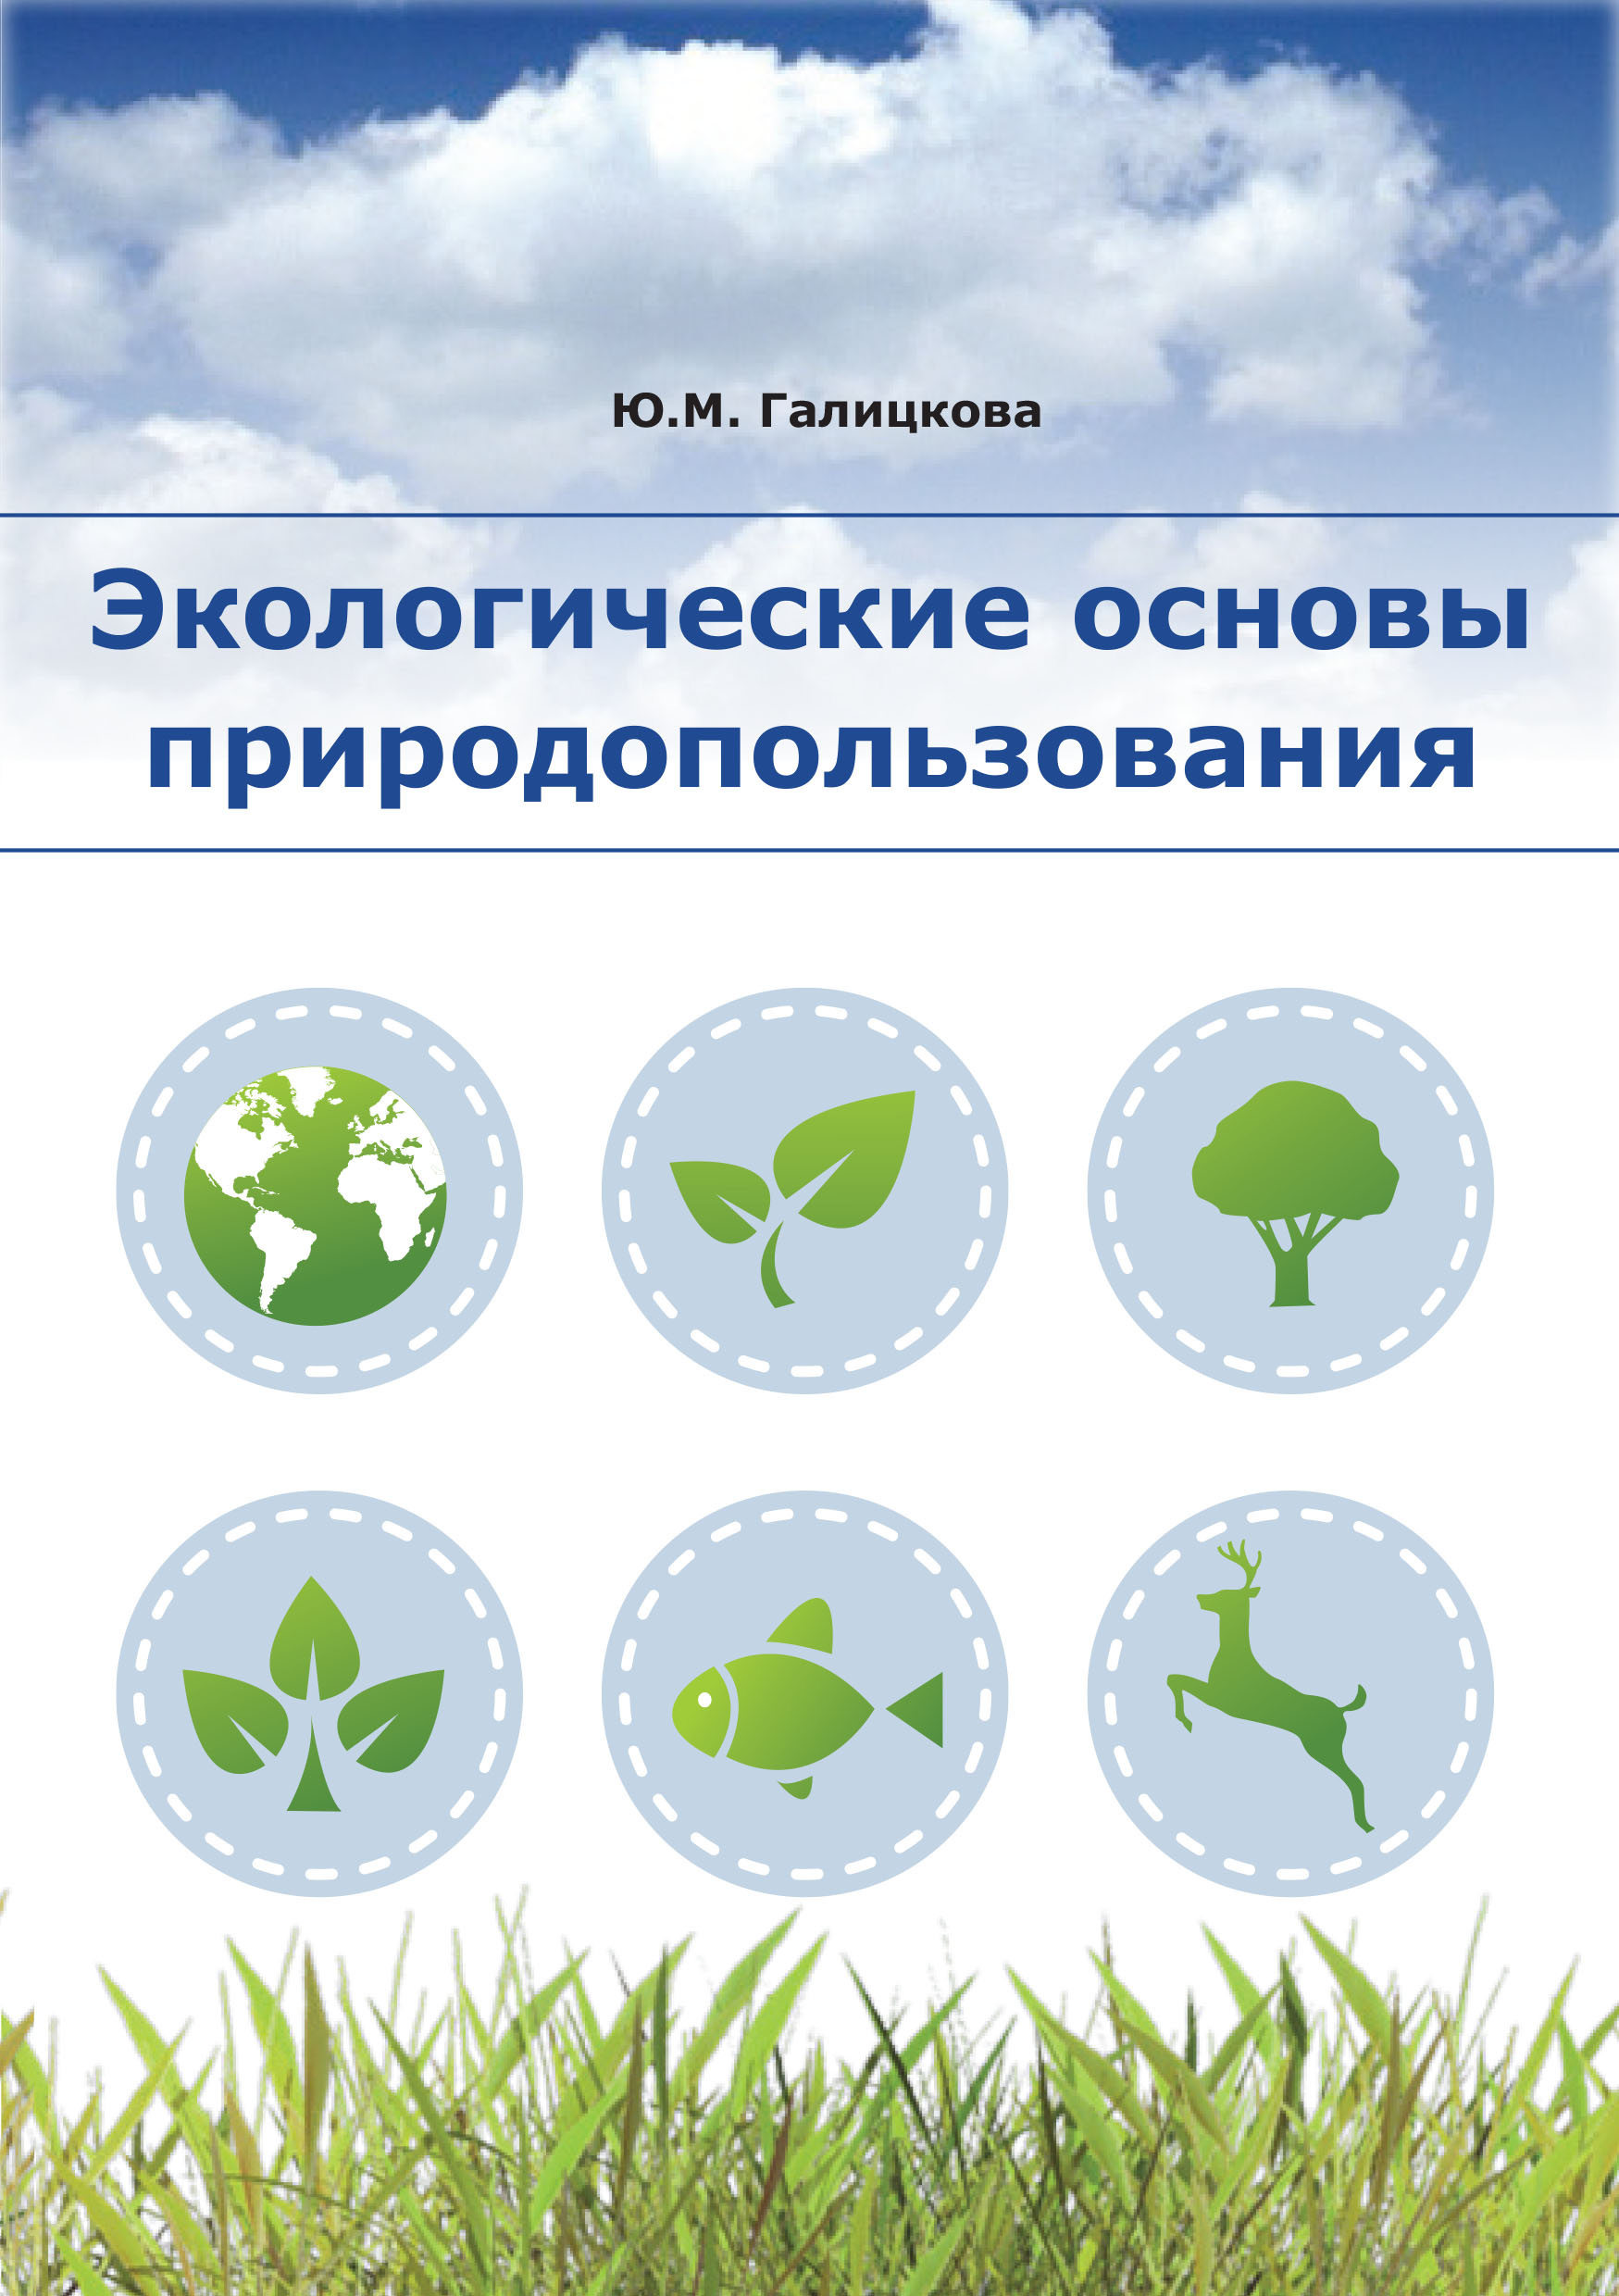 Направление экология и природопользование